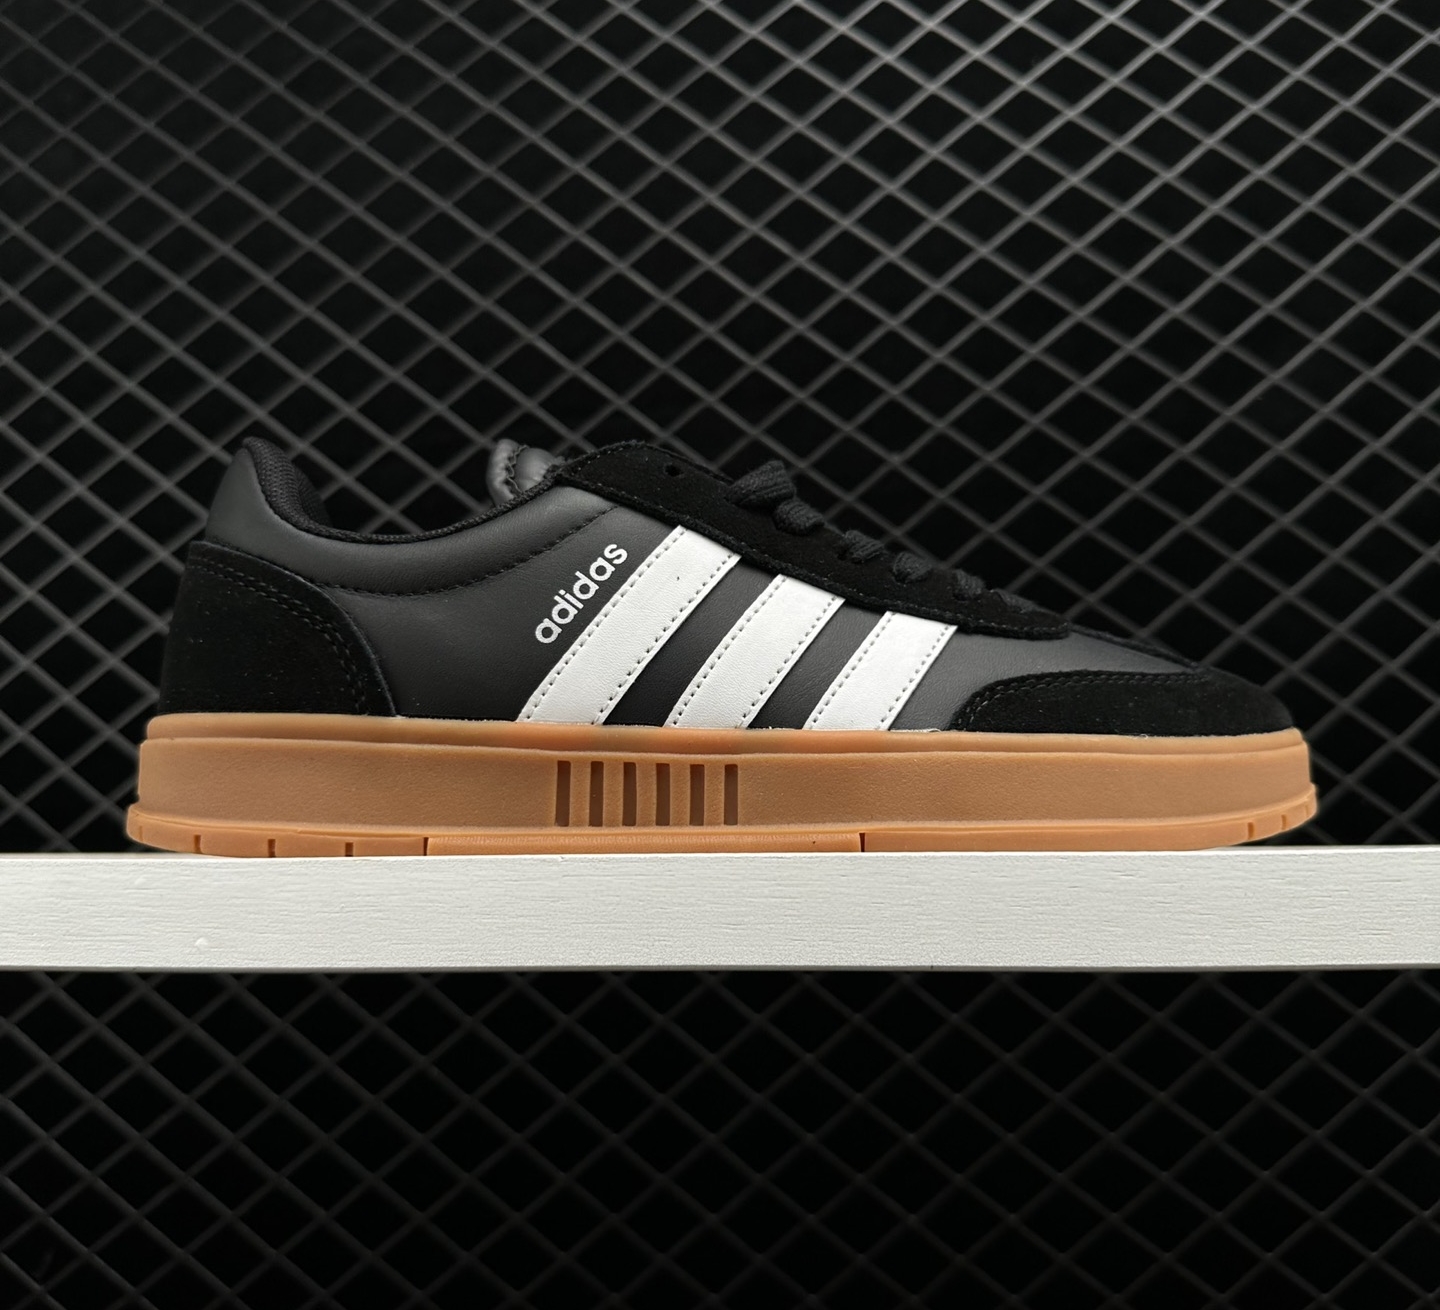 Adidas Neo Gradas FX9305 - Black White Brown Sneakers | Shop Now!